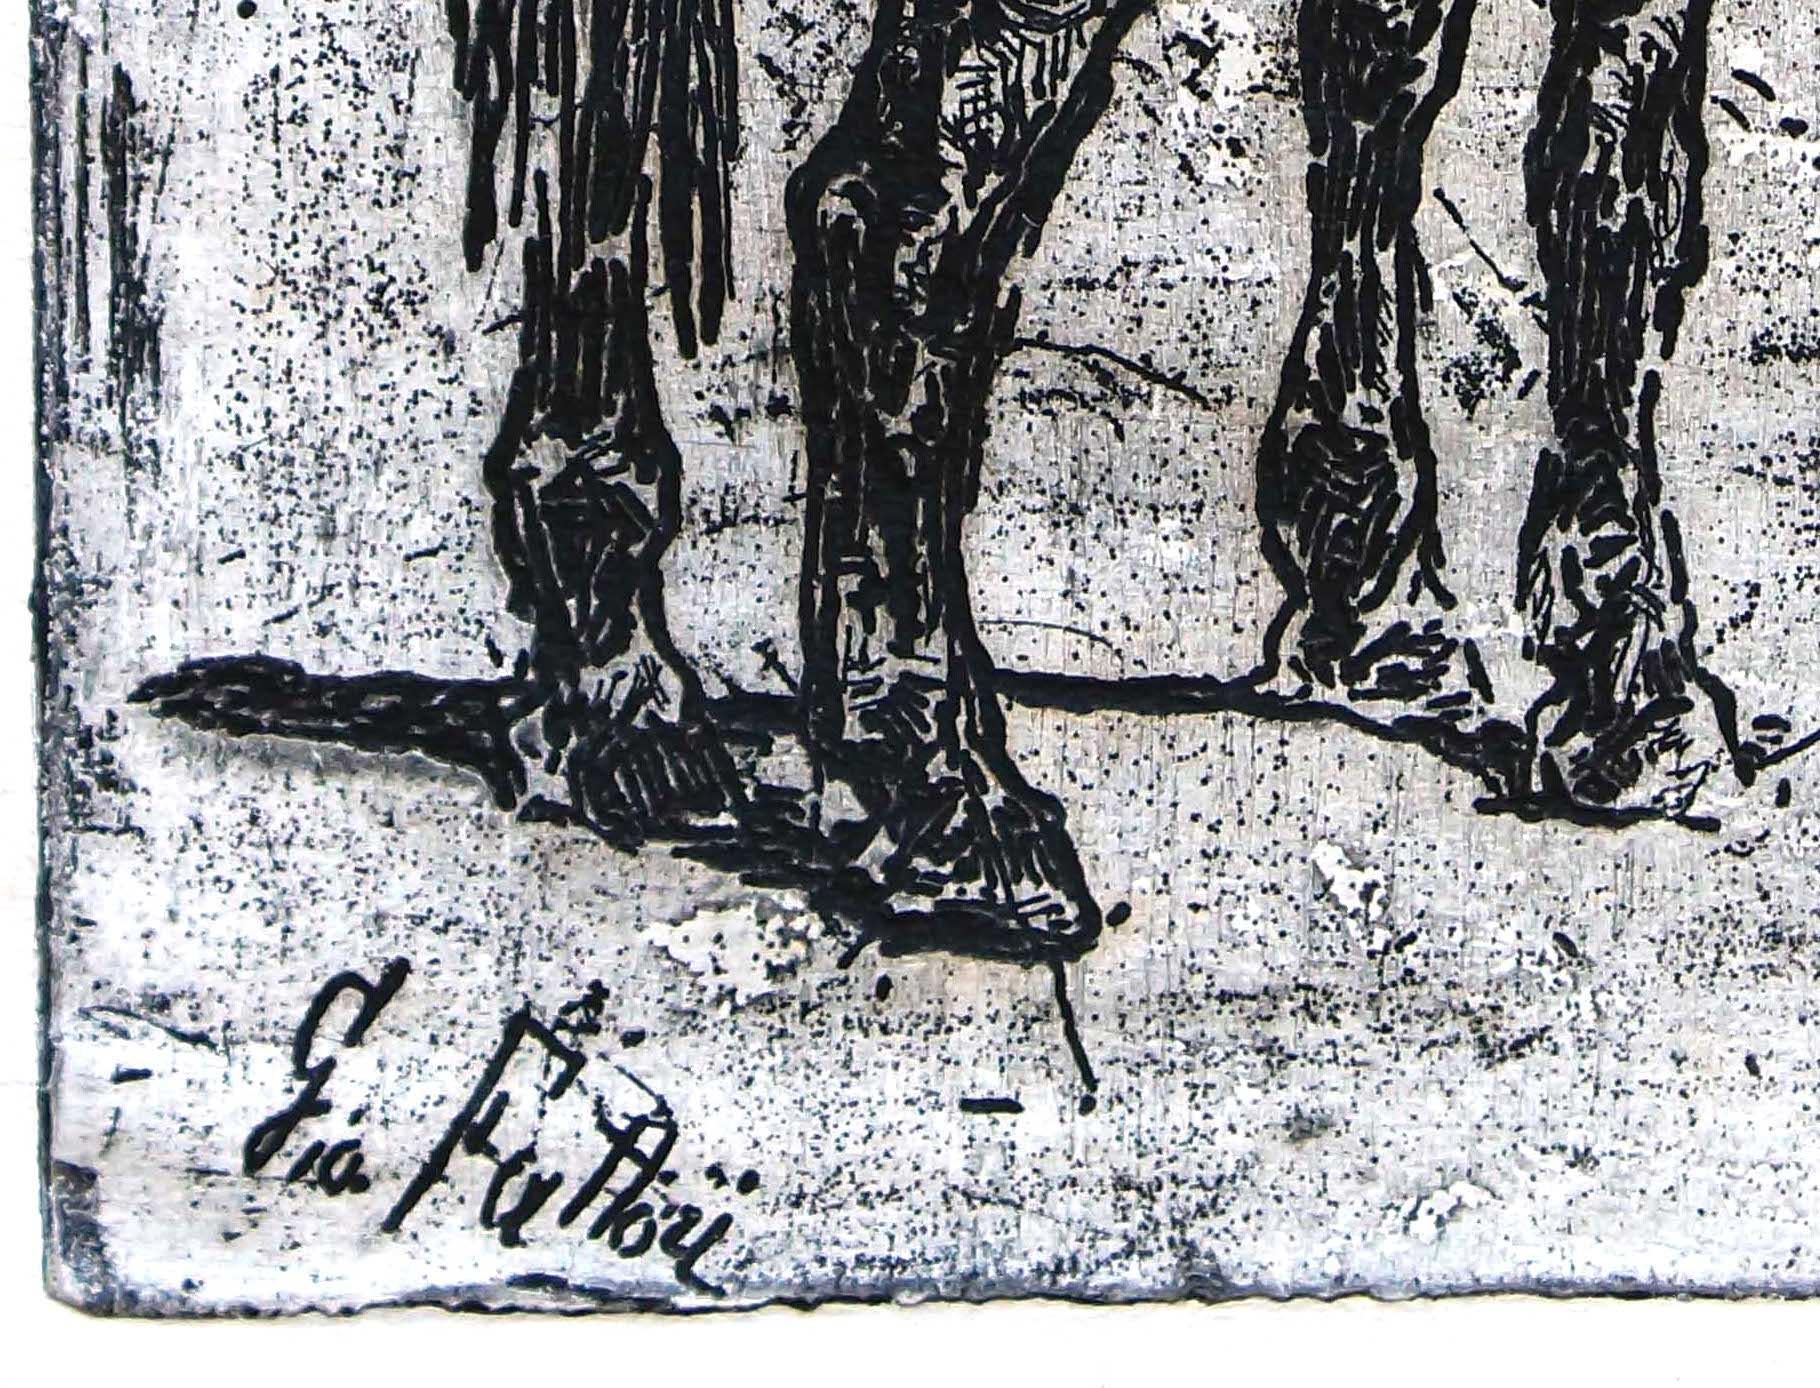 Image dimensions: 16.5x10 cm
Signed on plate by the artist.
Bibliography: A.Baboni, L’Ottocento: le incisioni di Giovanni Fattori, Museo Civico “Giovanni Fattori”, Livorno 2001, p. 76, tav. 55.

Giovanni Fattori was an Italian artist, one of the